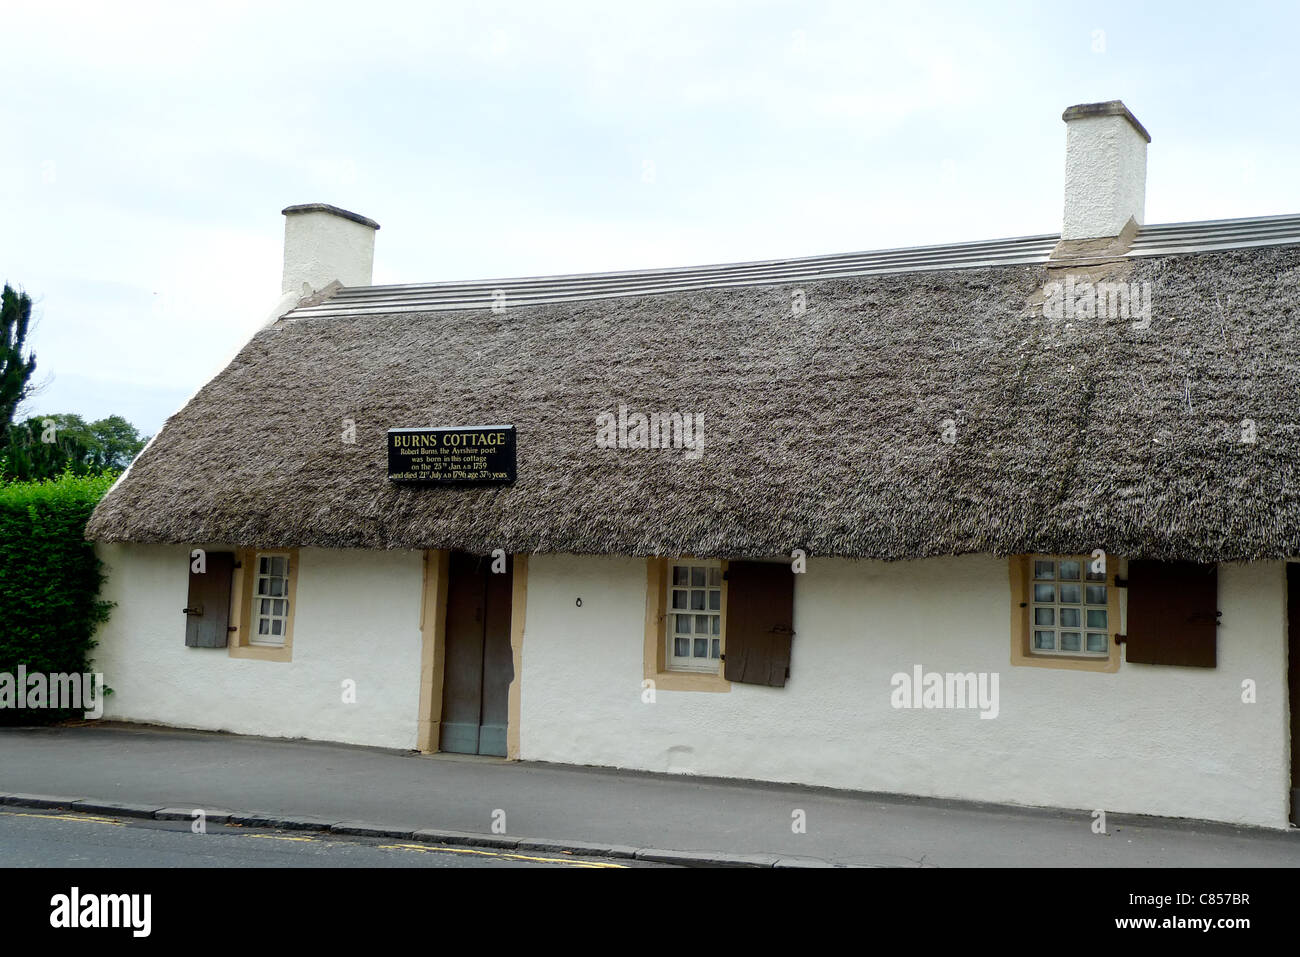 Ferienhaus-Geburtsort des schottischen Nationaldichters Robert Burns, Alloway, Schottland, 2011. Stockfoto